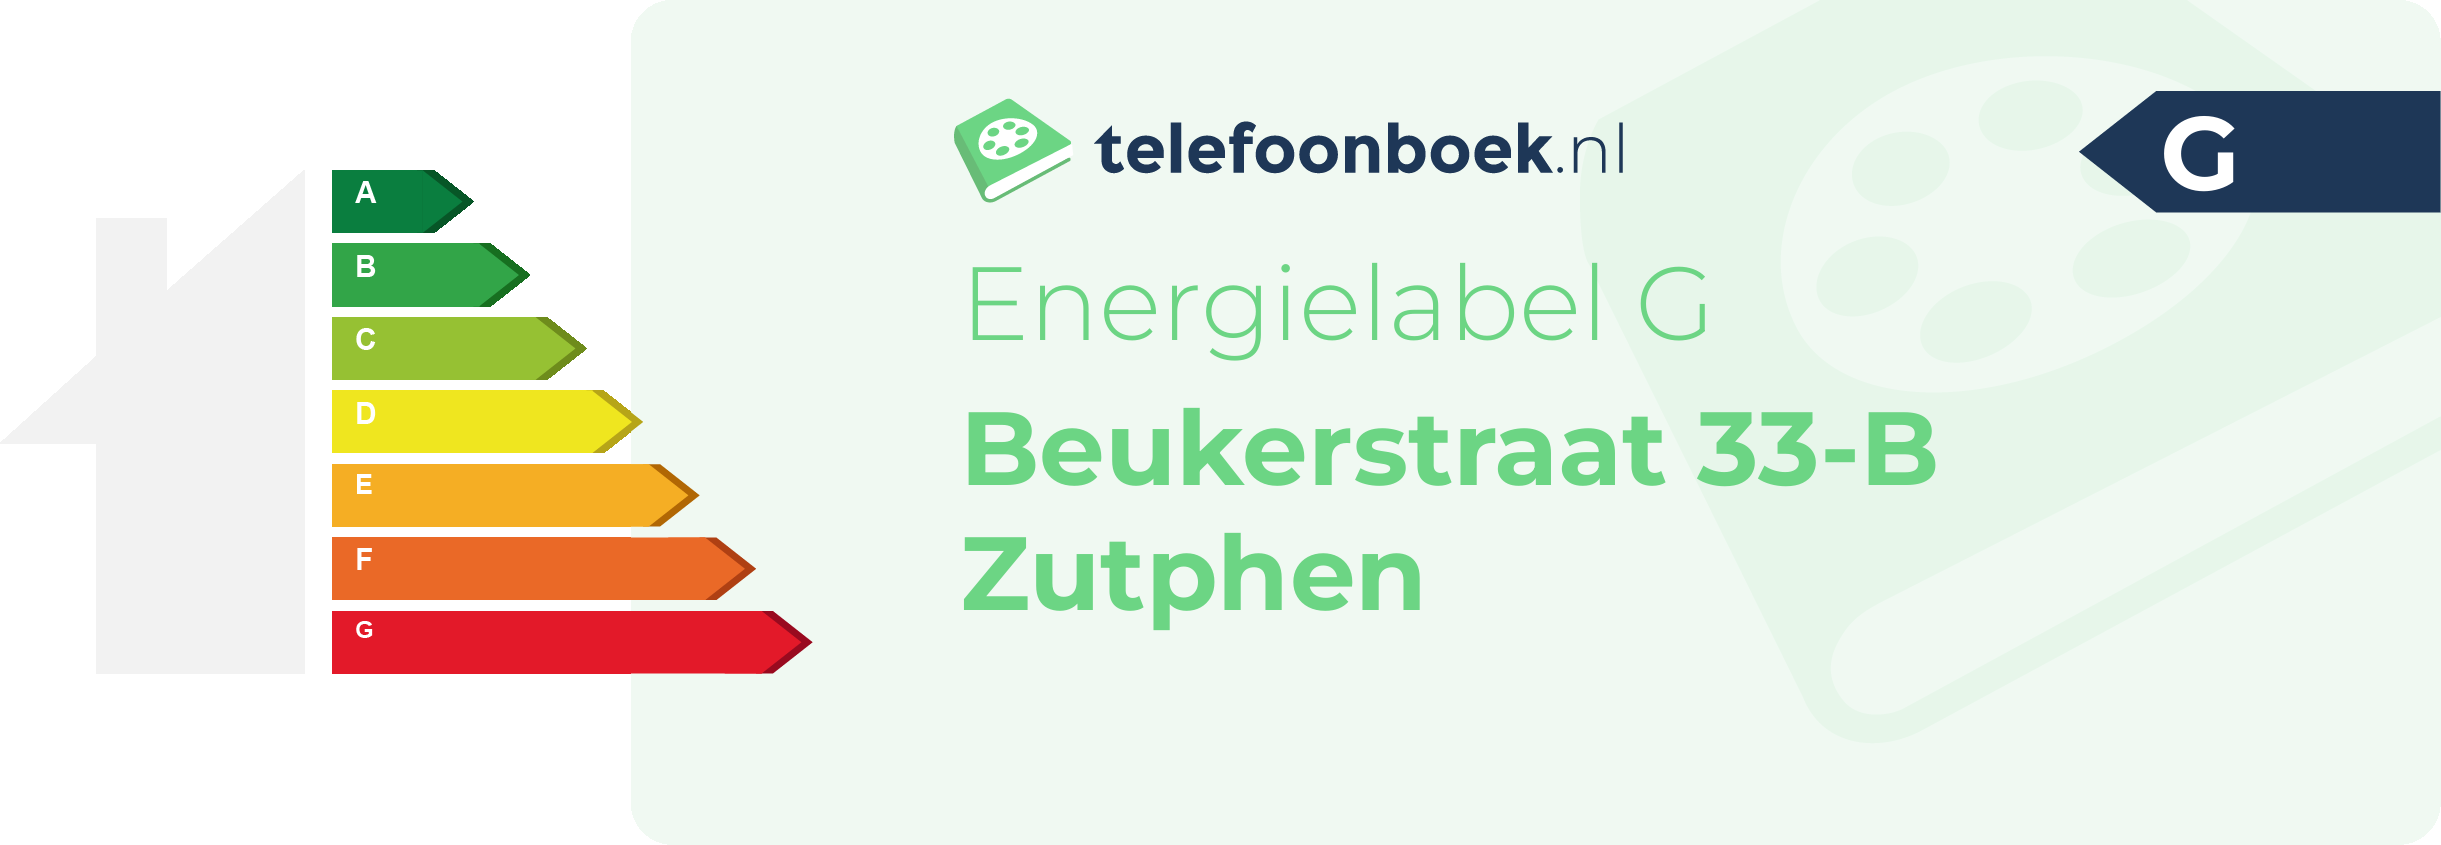 Energielabel Beukerstraat 33-B Zutphen